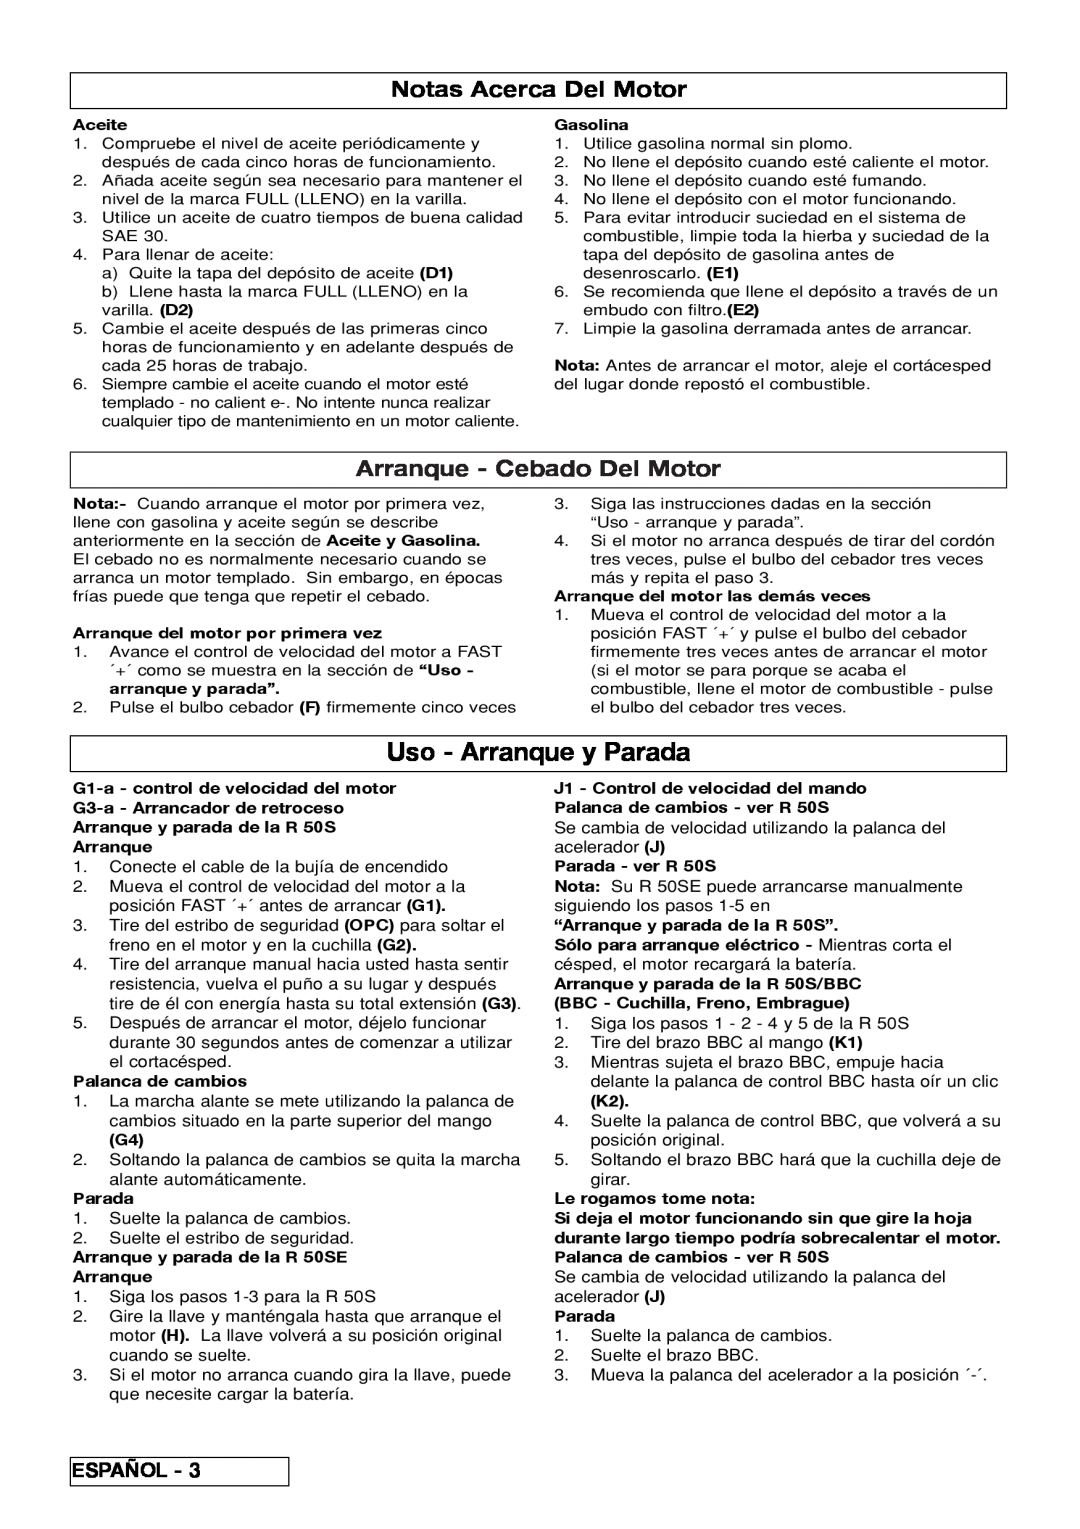 Husqvarna R 50S / BBC, R 50SE manual Uso - Arranque y Parada, Notas Acerca Del Motor, Arranque - Cebado Del Motor 